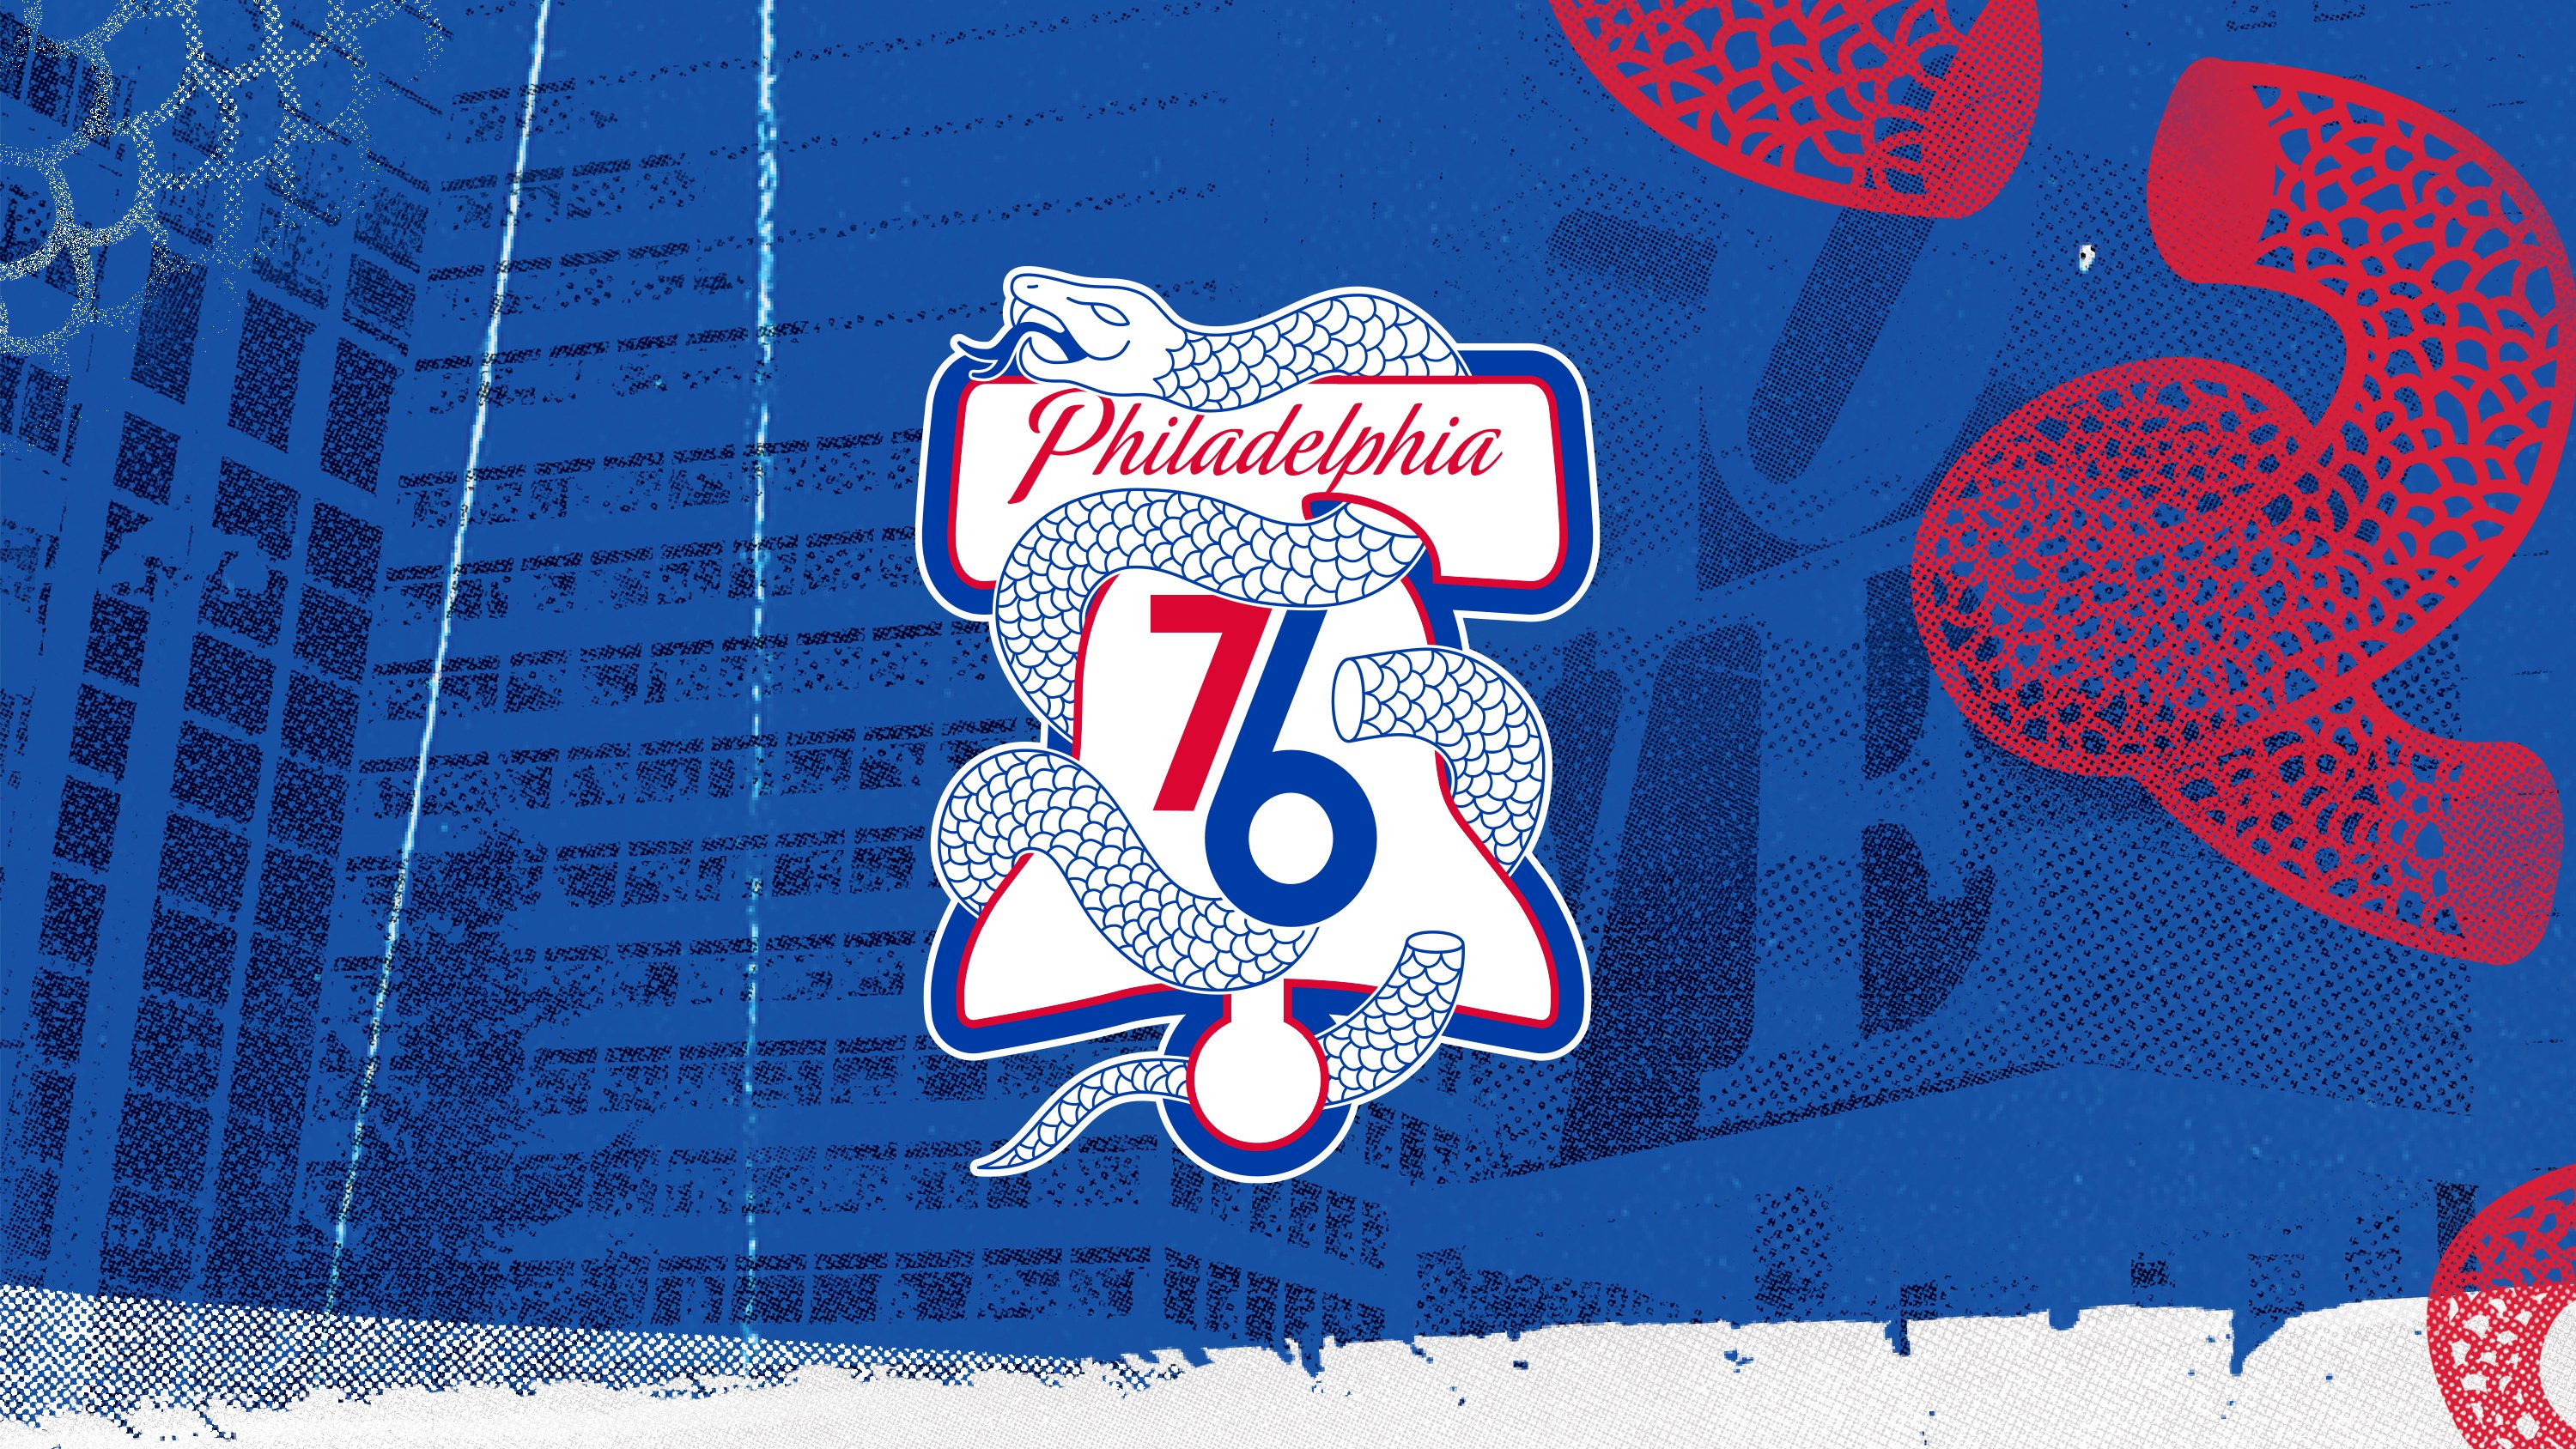 Philadelphia 76ers Wallpaper On